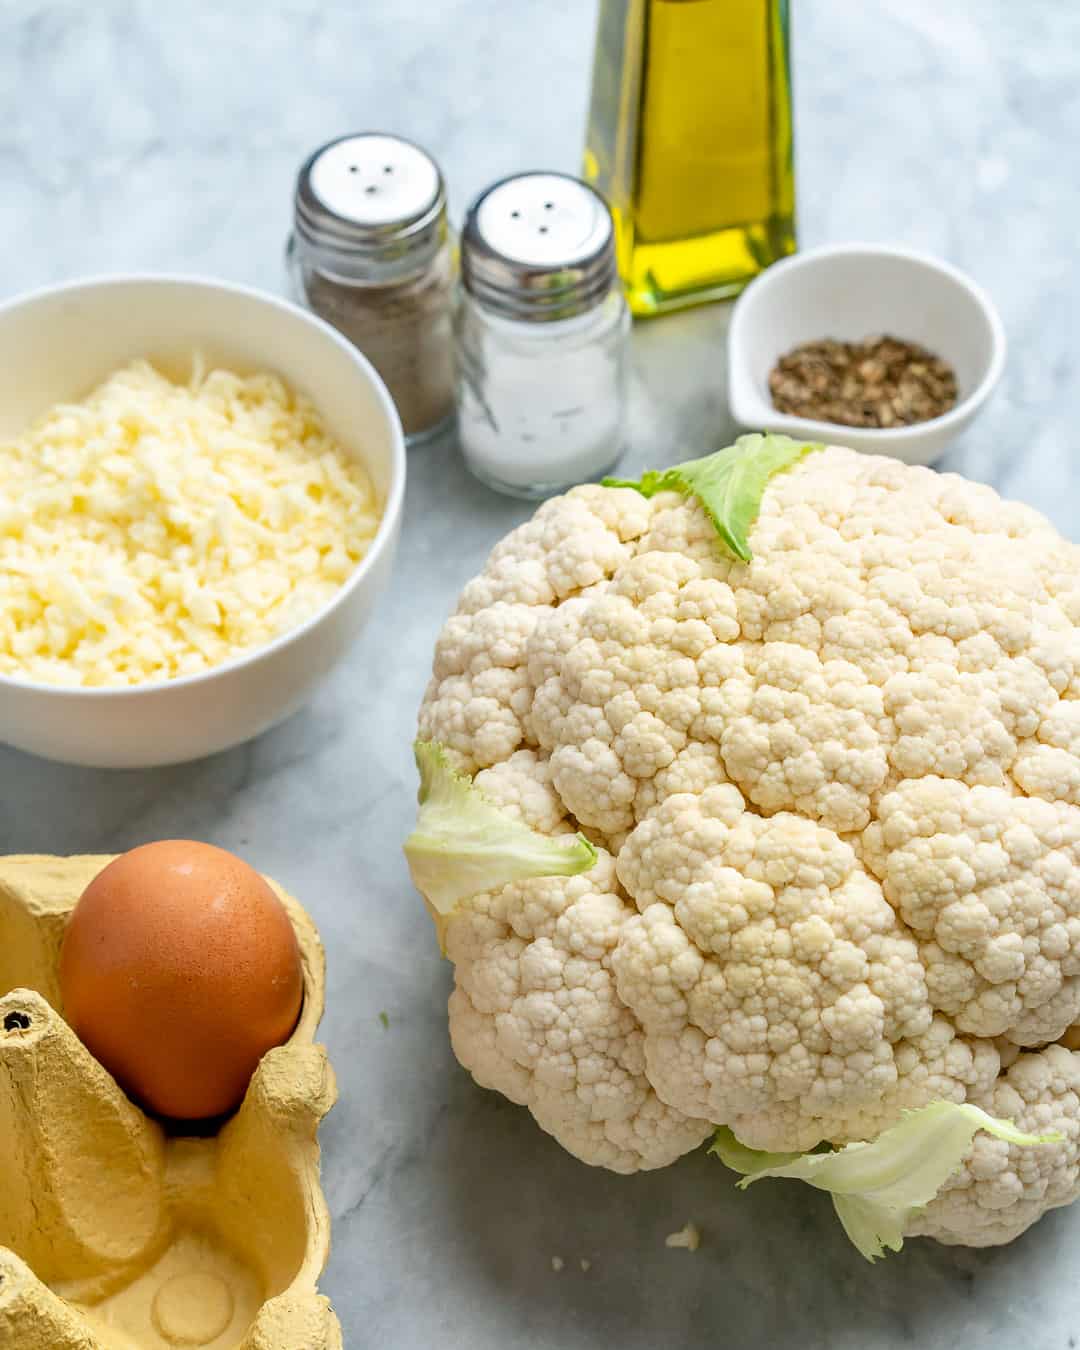 Ingredients for cauliflower pizza crust